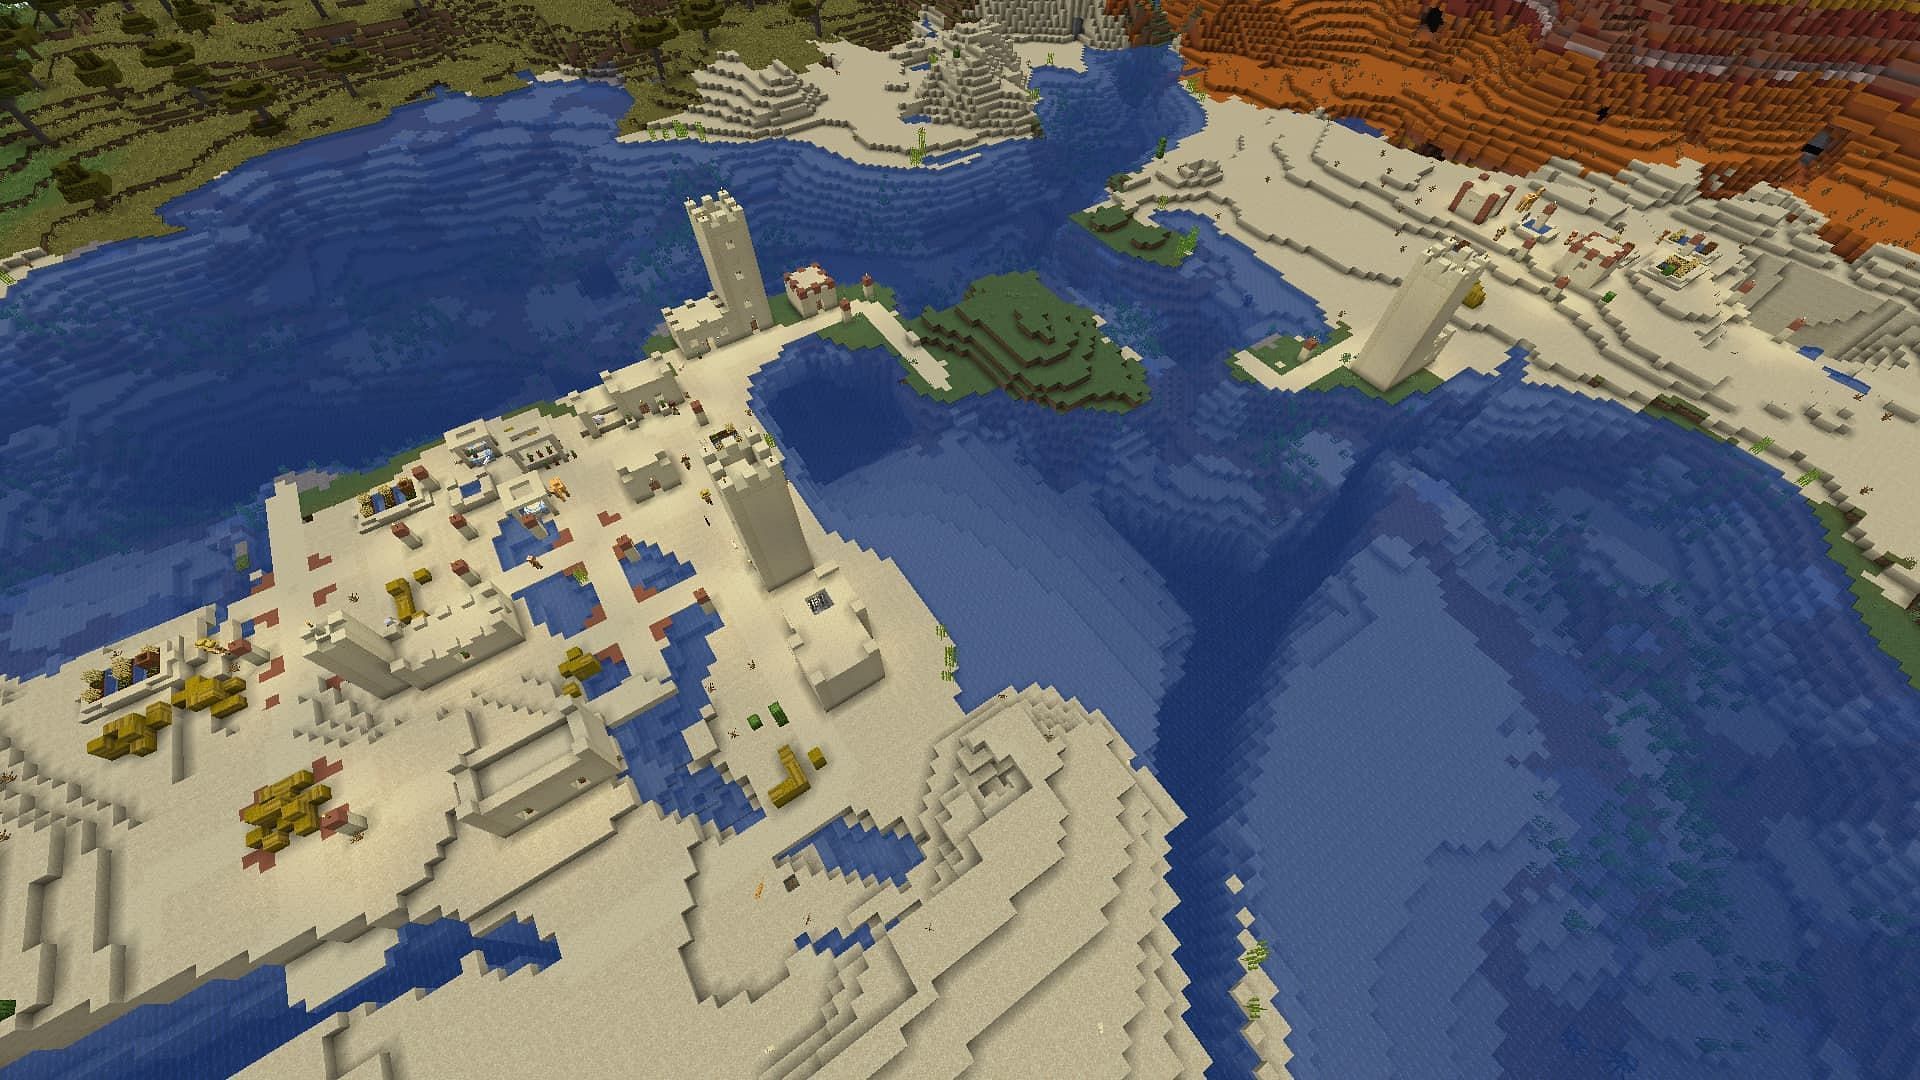 Спавн этого сида в пустыне Minecraft содержит несколько деревень, которые можно разграбить (Изображение взято с Mojang)